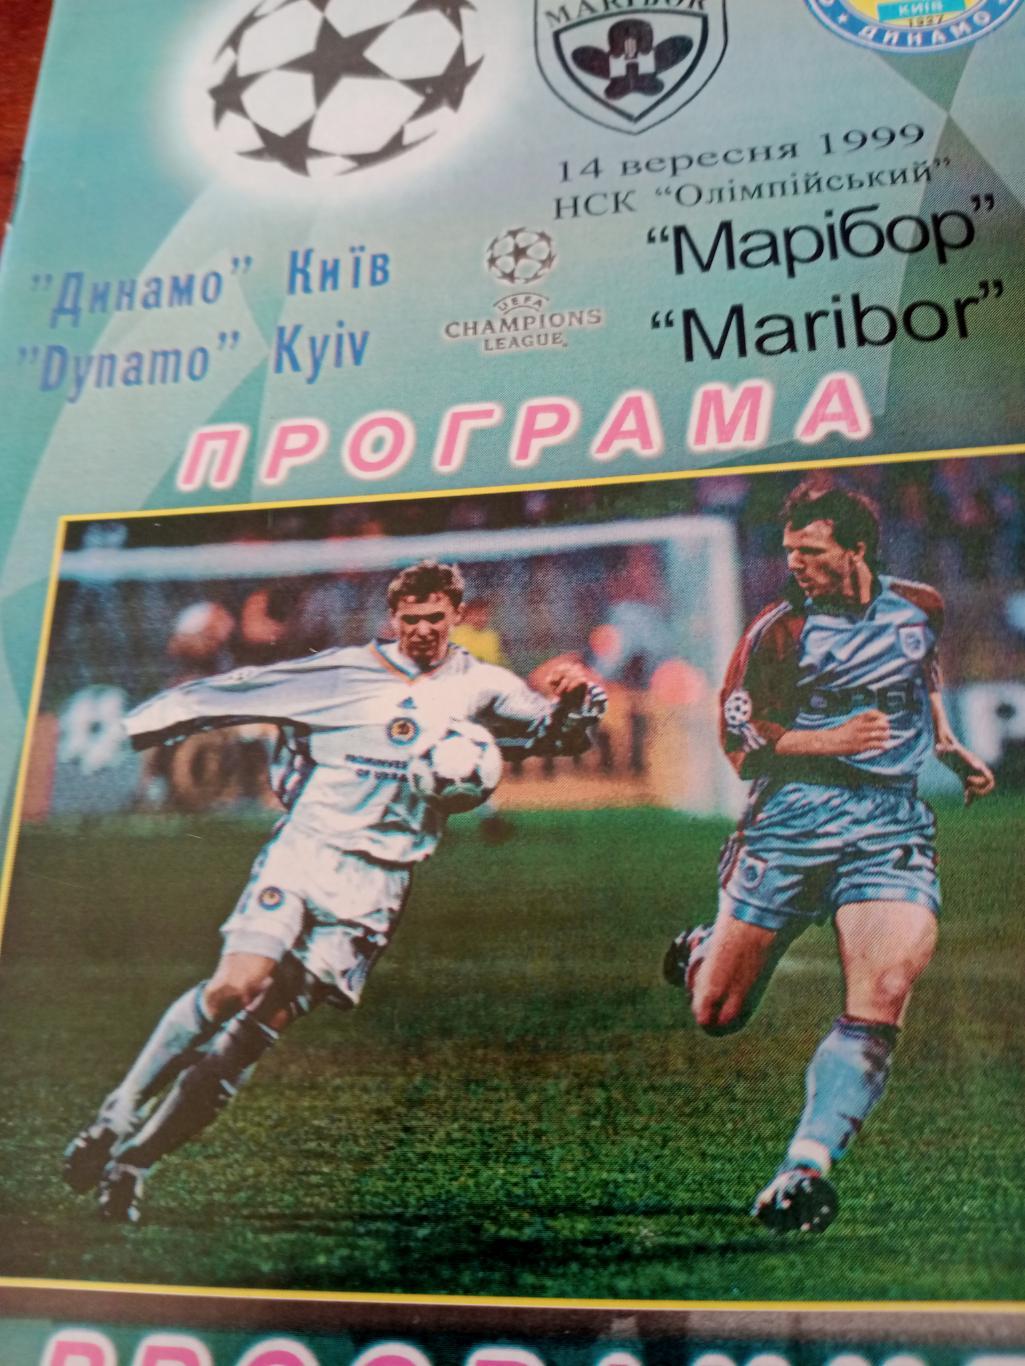 Динамо Киев - Марибор Словения. Лига чемпионов. 1999 год